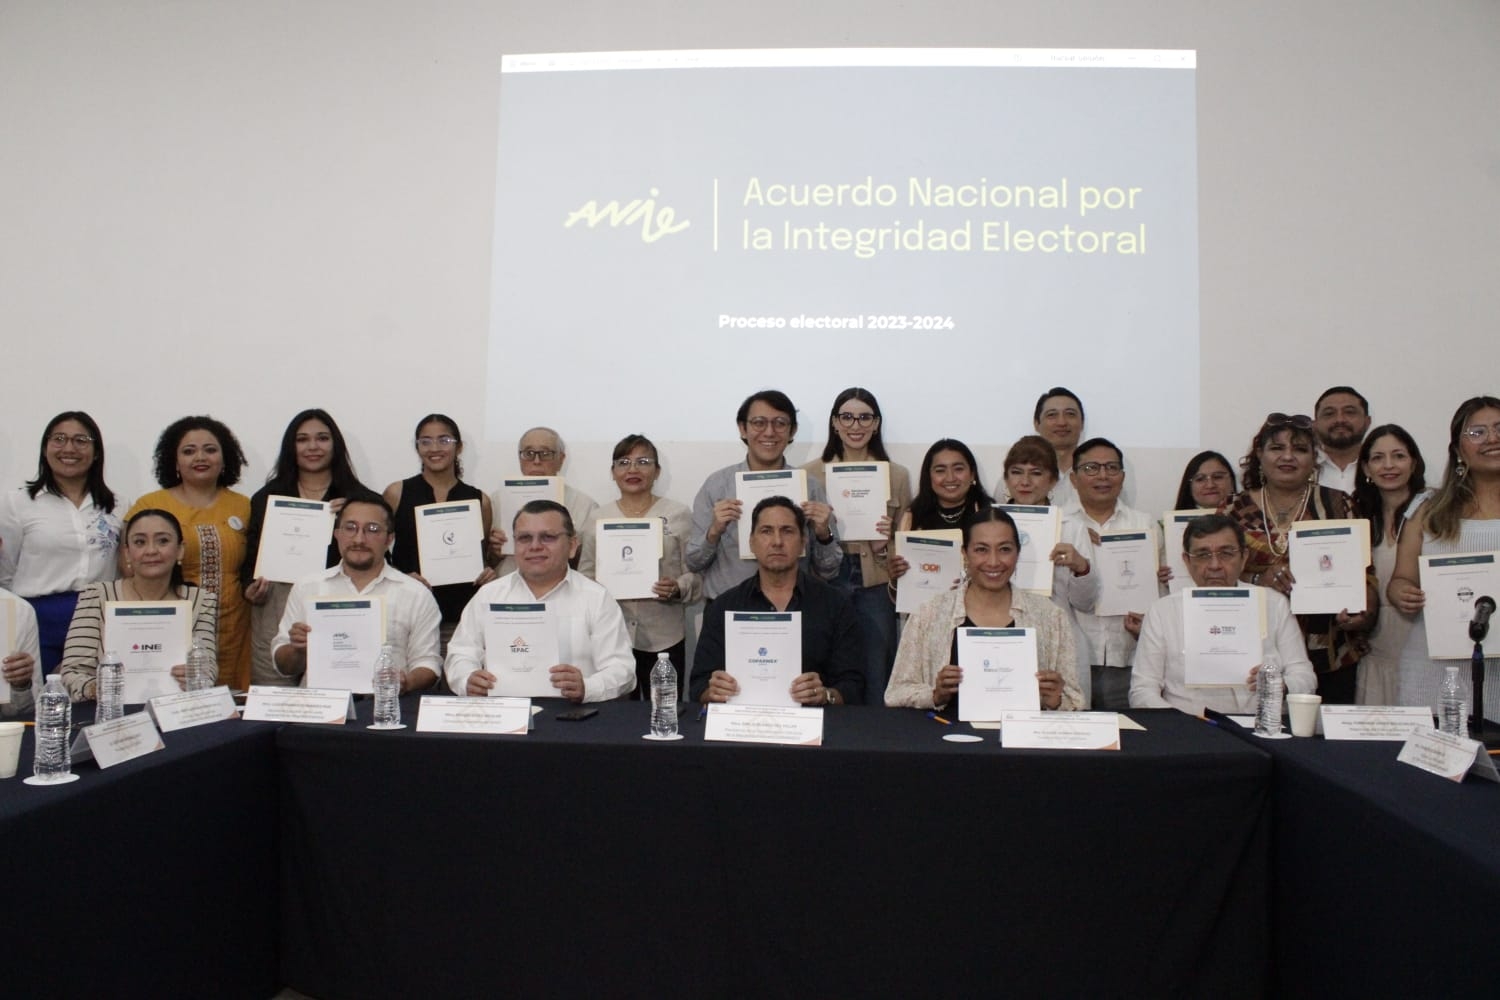 El acuerdo involucra a organismos civiles, incluyendo universidades, autoridades electorales y el sector empresarial yucateco